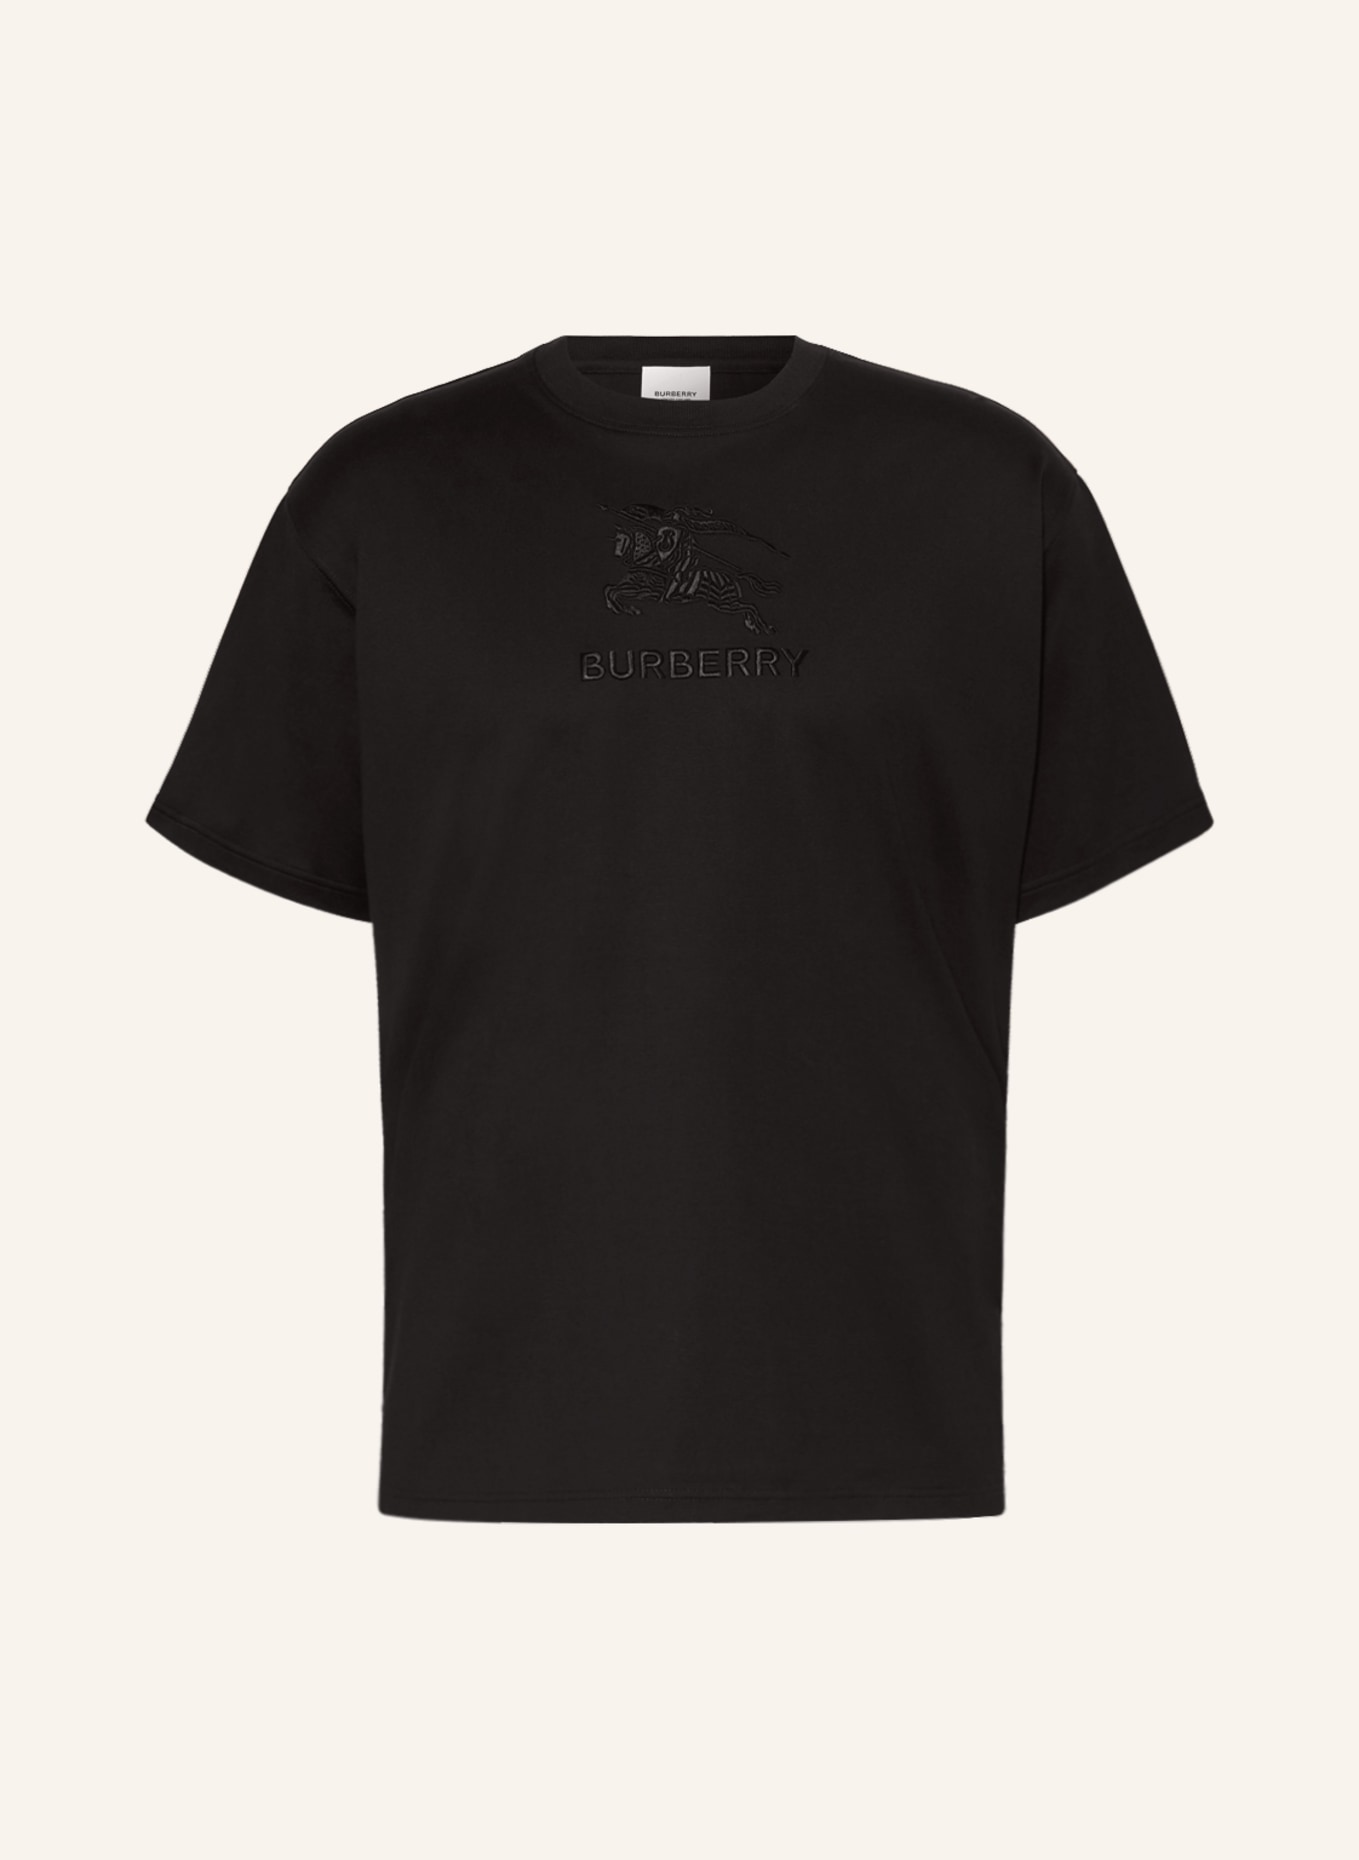 BURBERRY T-shirt TEMPAH, Color: BLACK (Image 1)